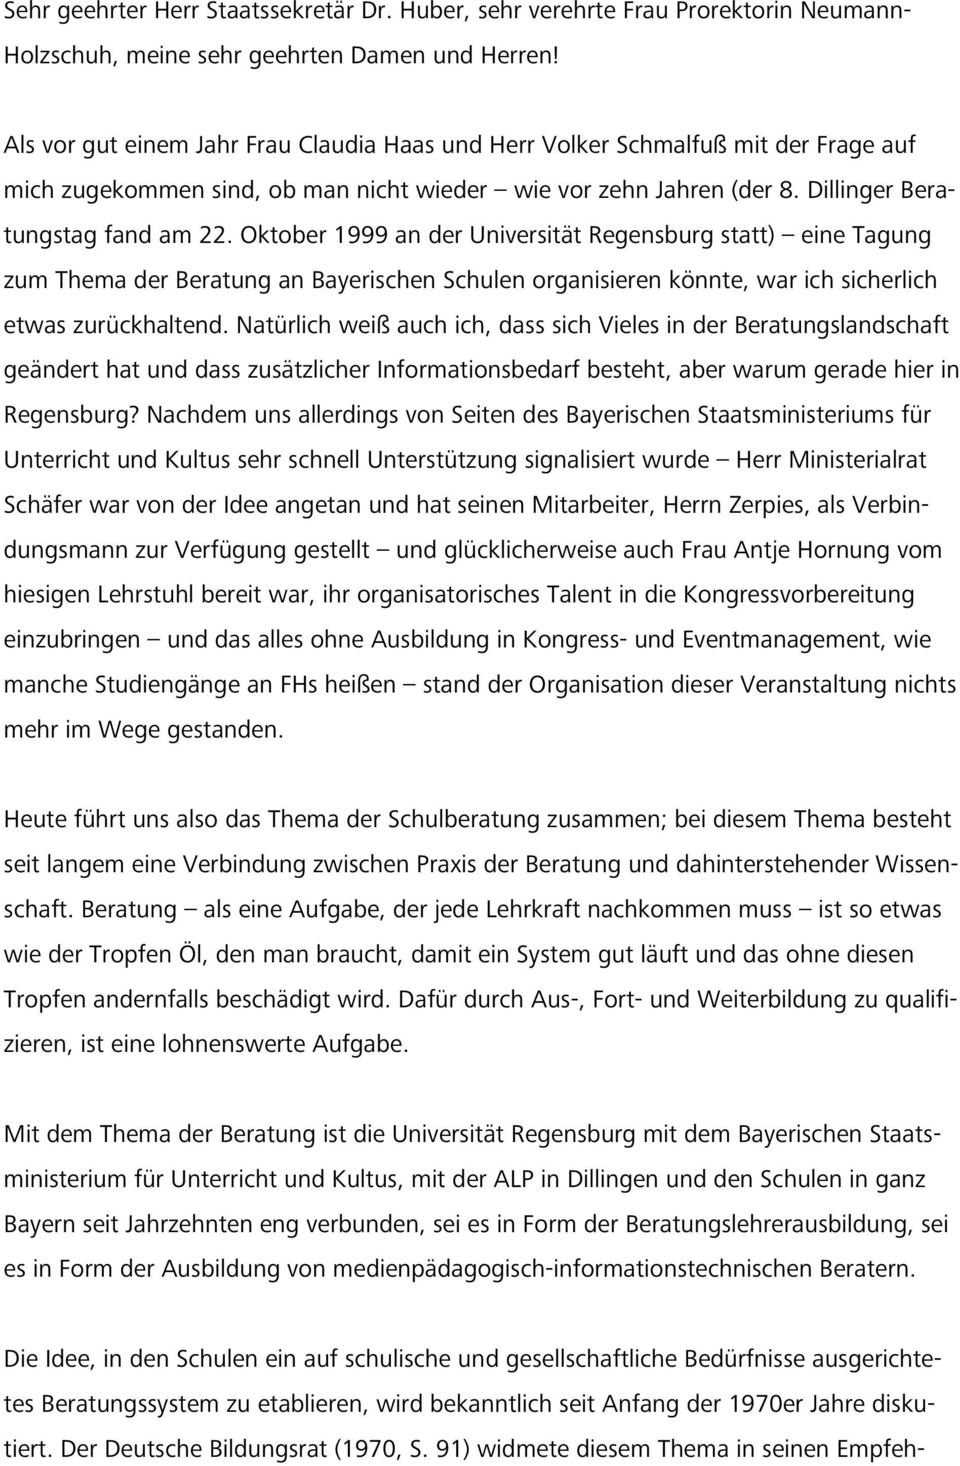 Oktober 1999 an der Universität Regensburg statt) eine Tagung zum Thema der Beratung an Bayerischen Schulen organisieren könnte, war ich sicherlich etwas zurückhaltend.